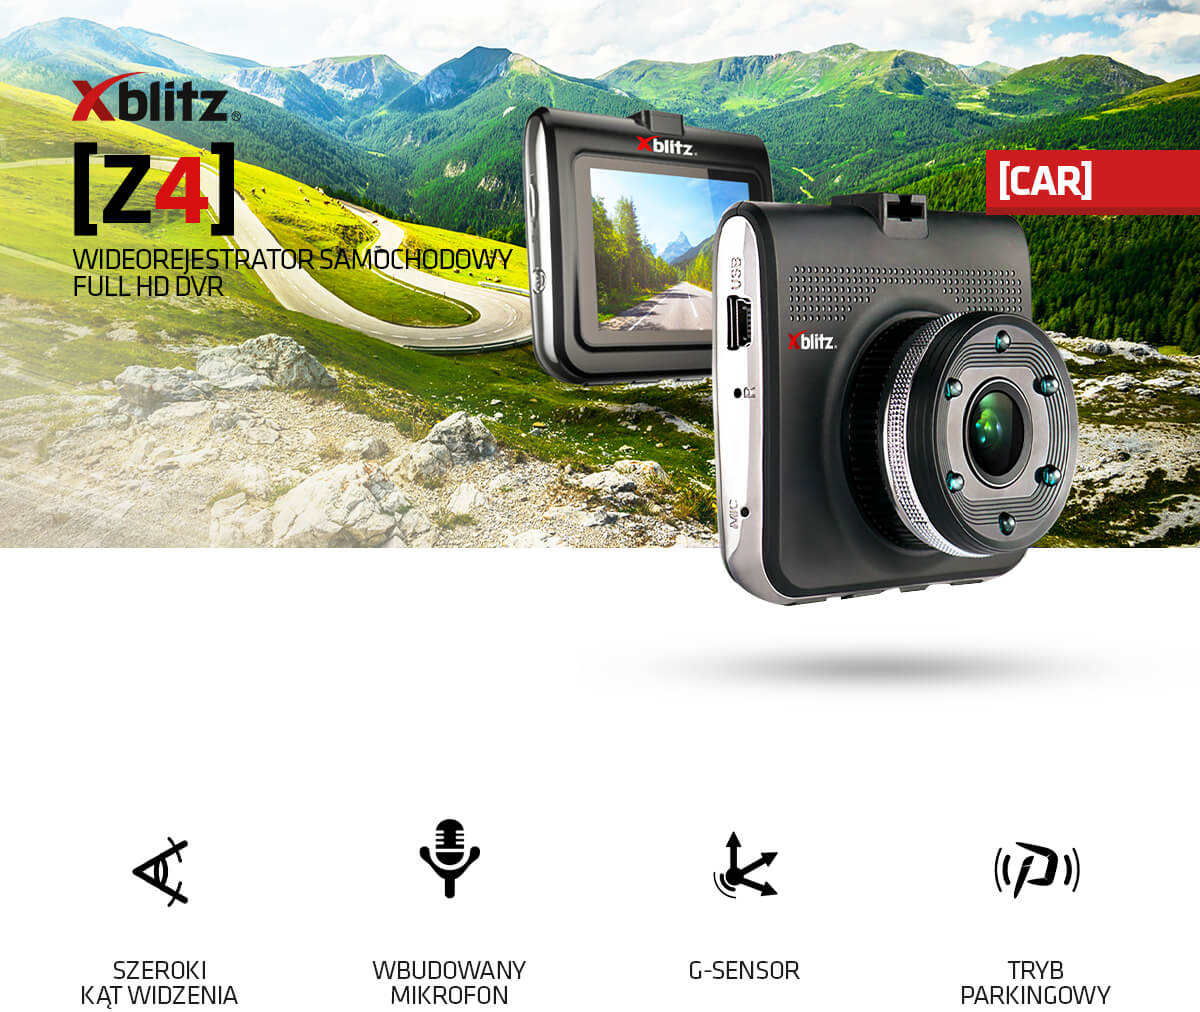 Видеорегистратор за кола Xblitz Z4